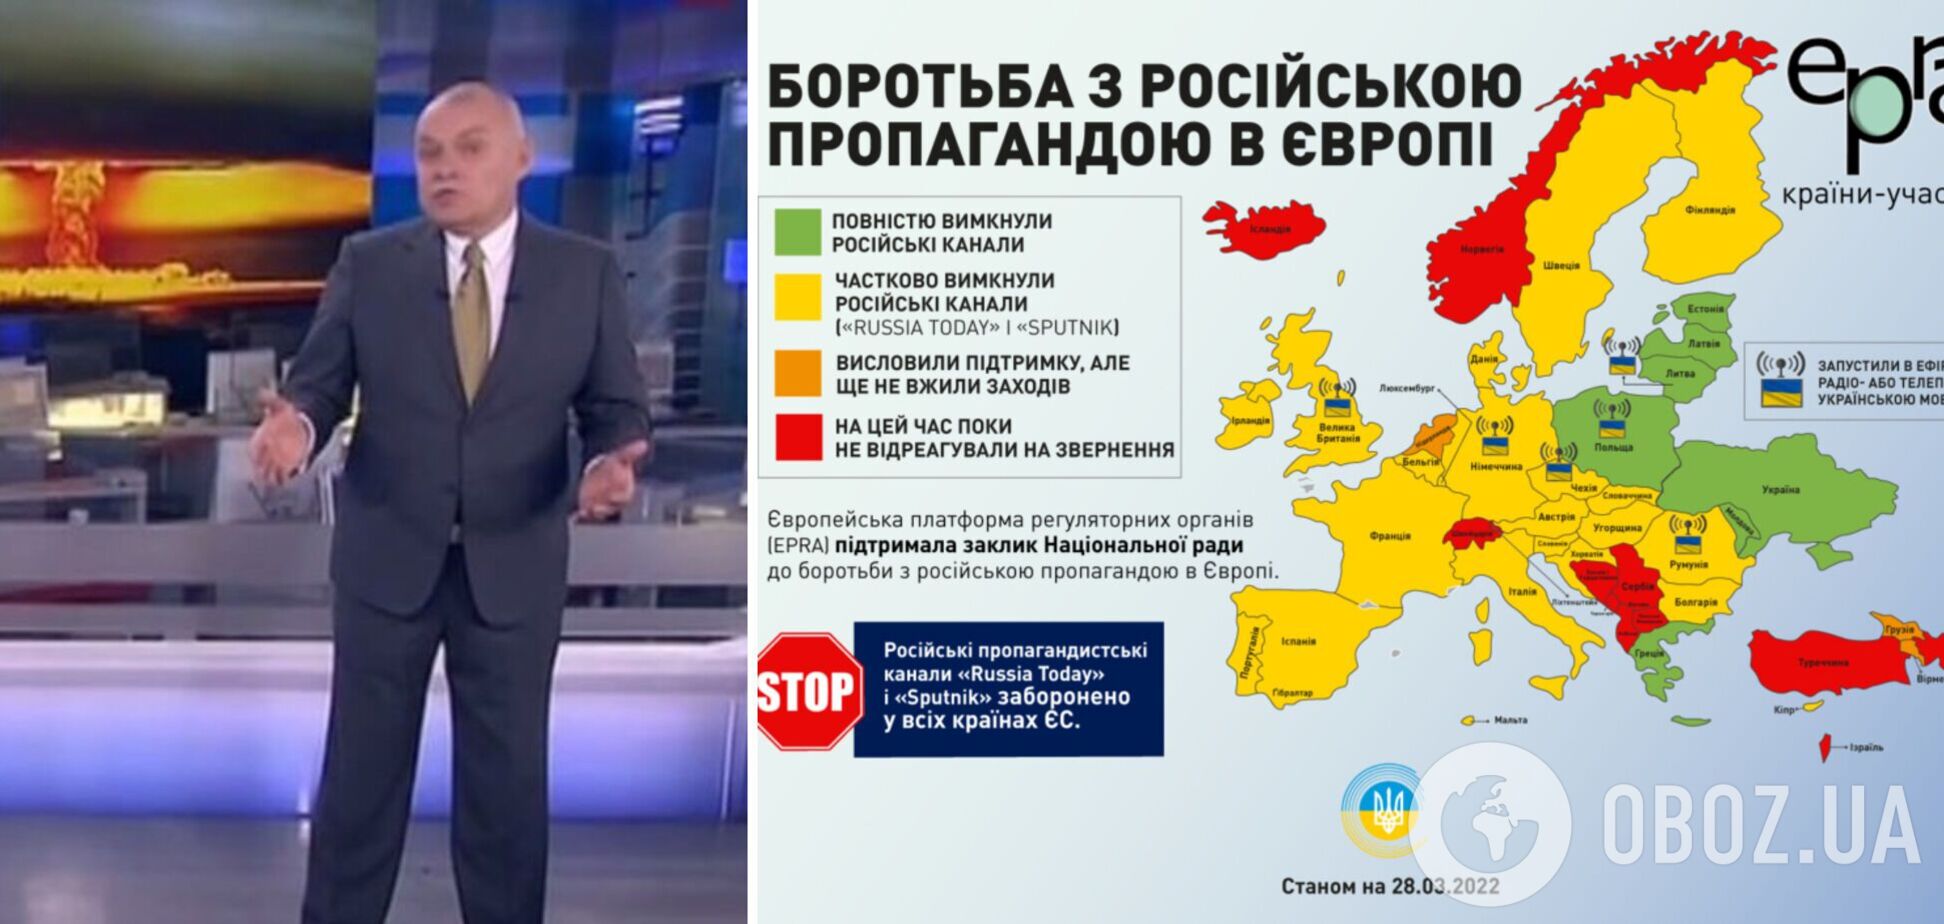 Кто в Европе и как борется с пропагандой России: карта